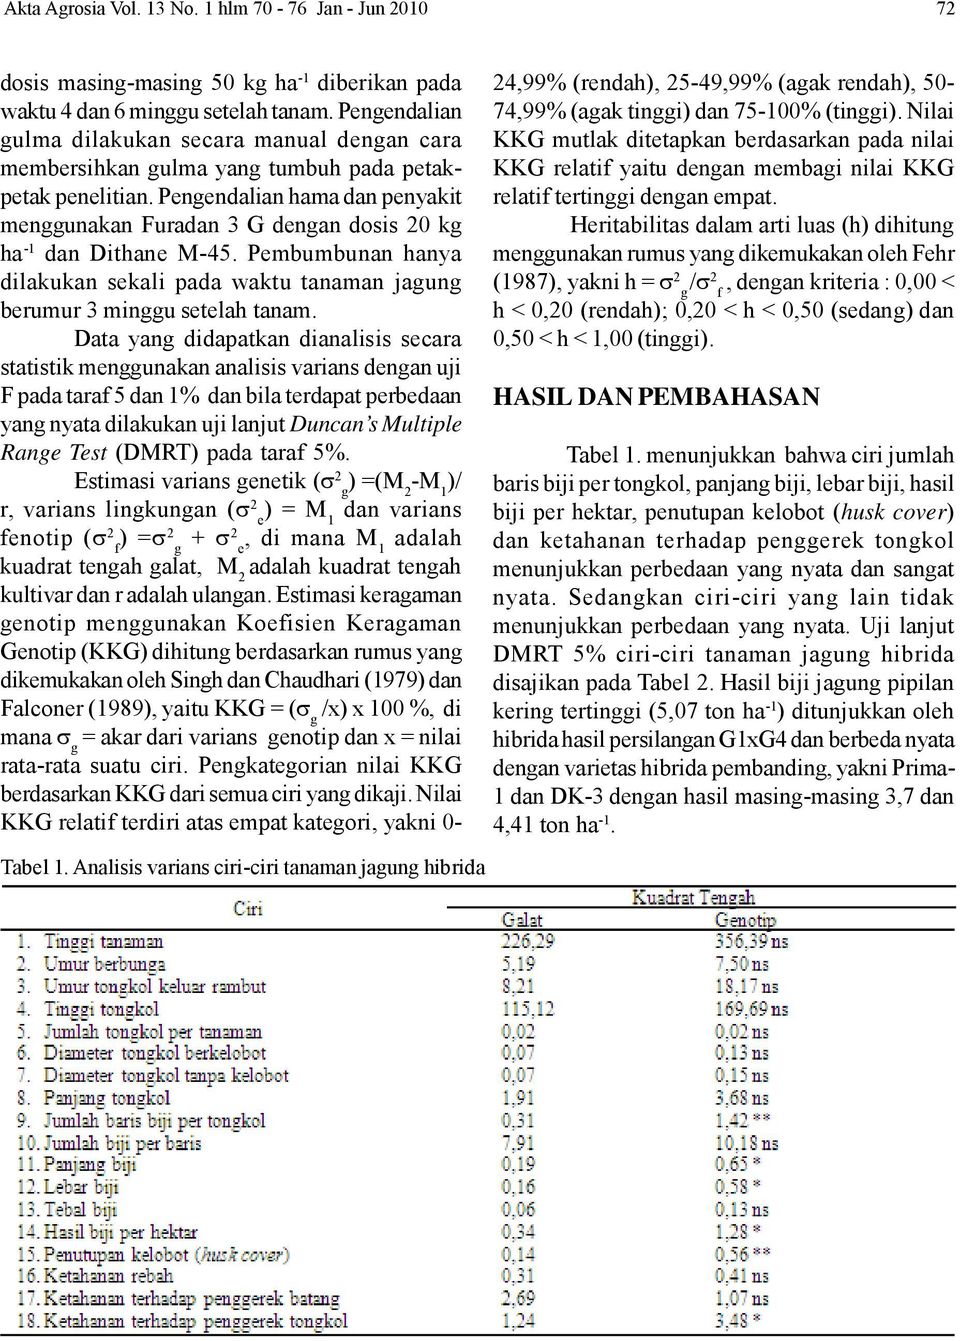 Pengendalian hama dan penyakit menggunakan Furadan 3 G dengan dosis 20 kg ha -1 dan Dithane M-45. Pembumbunan hanya dilakukan sekali pada waktu tanaman jagung berumur 3 minggu setelah tanam.